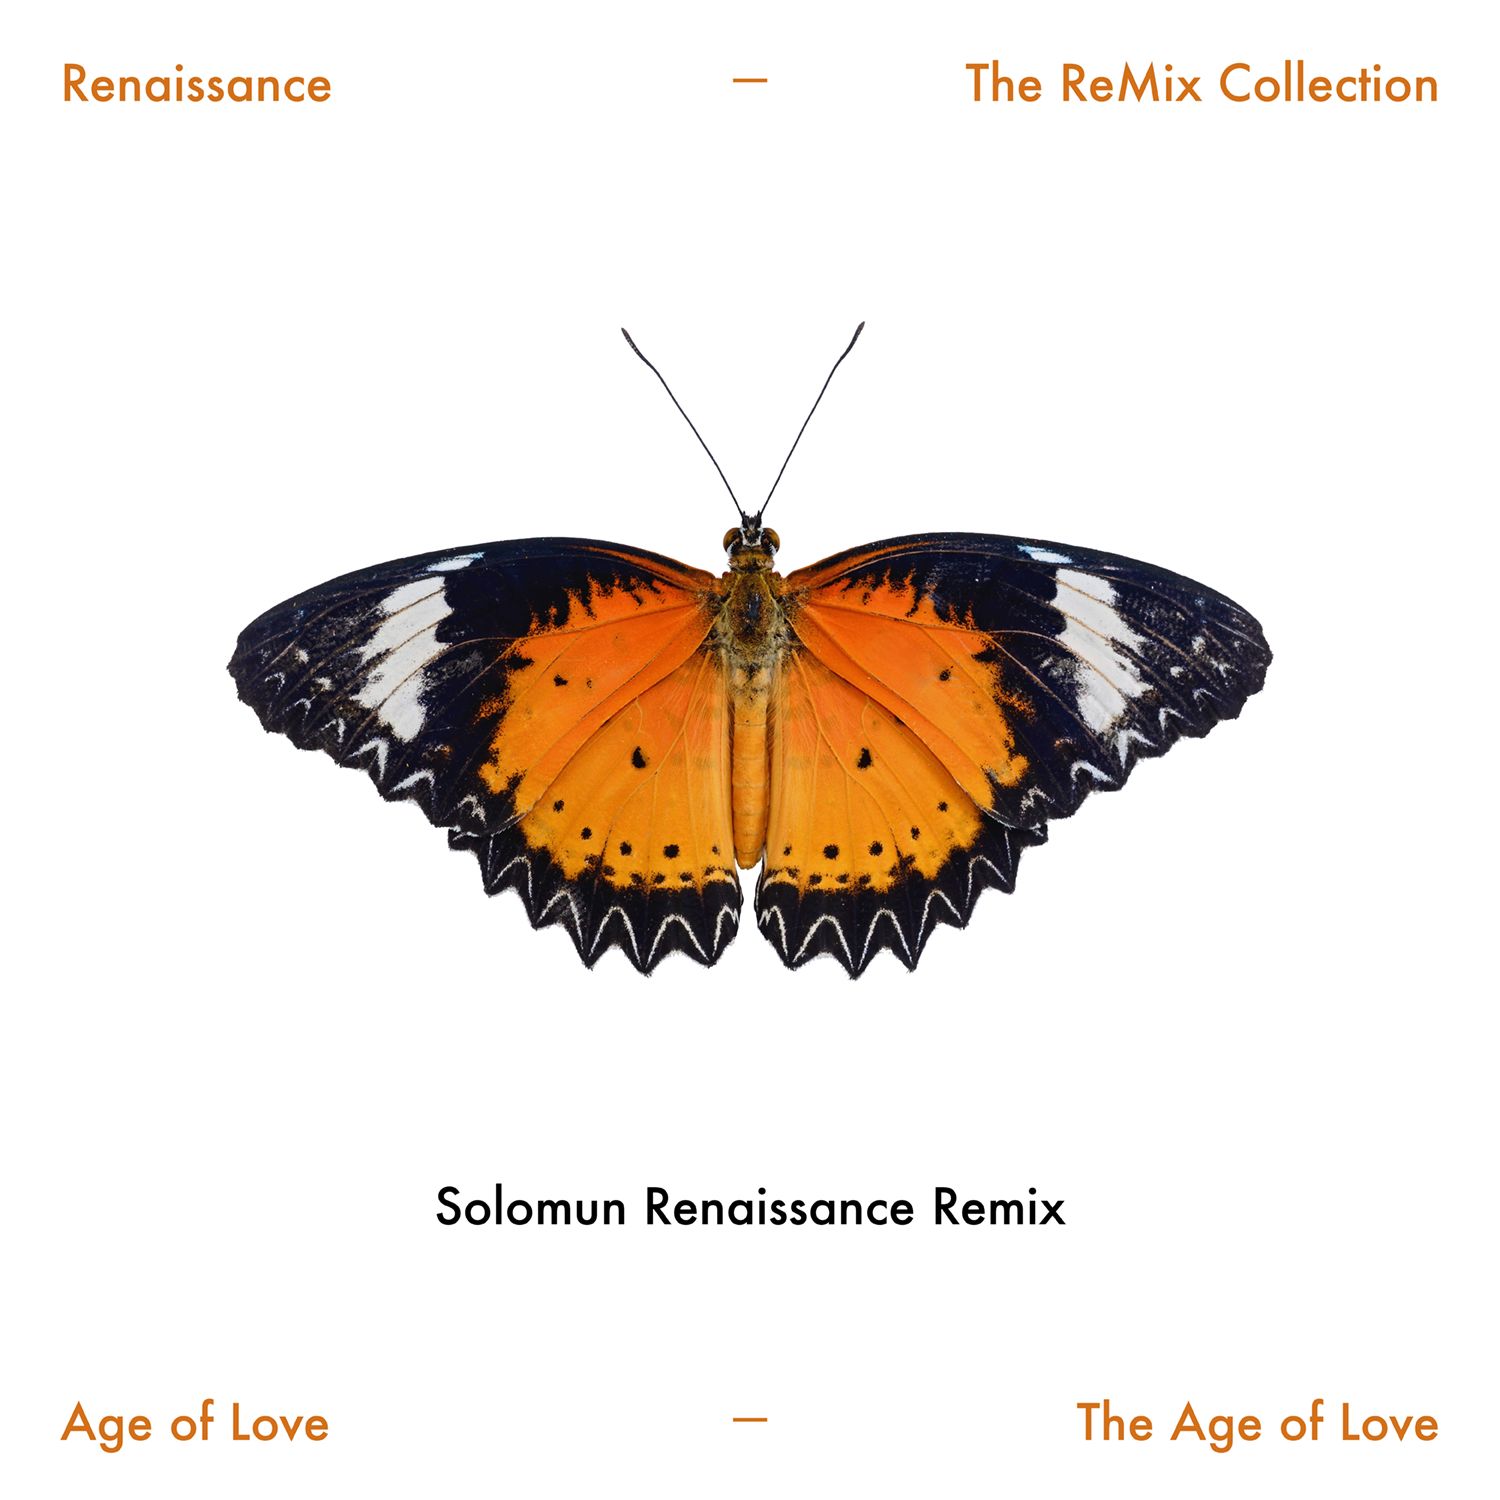 The Age of Love (Solomun Renaissance Remix)